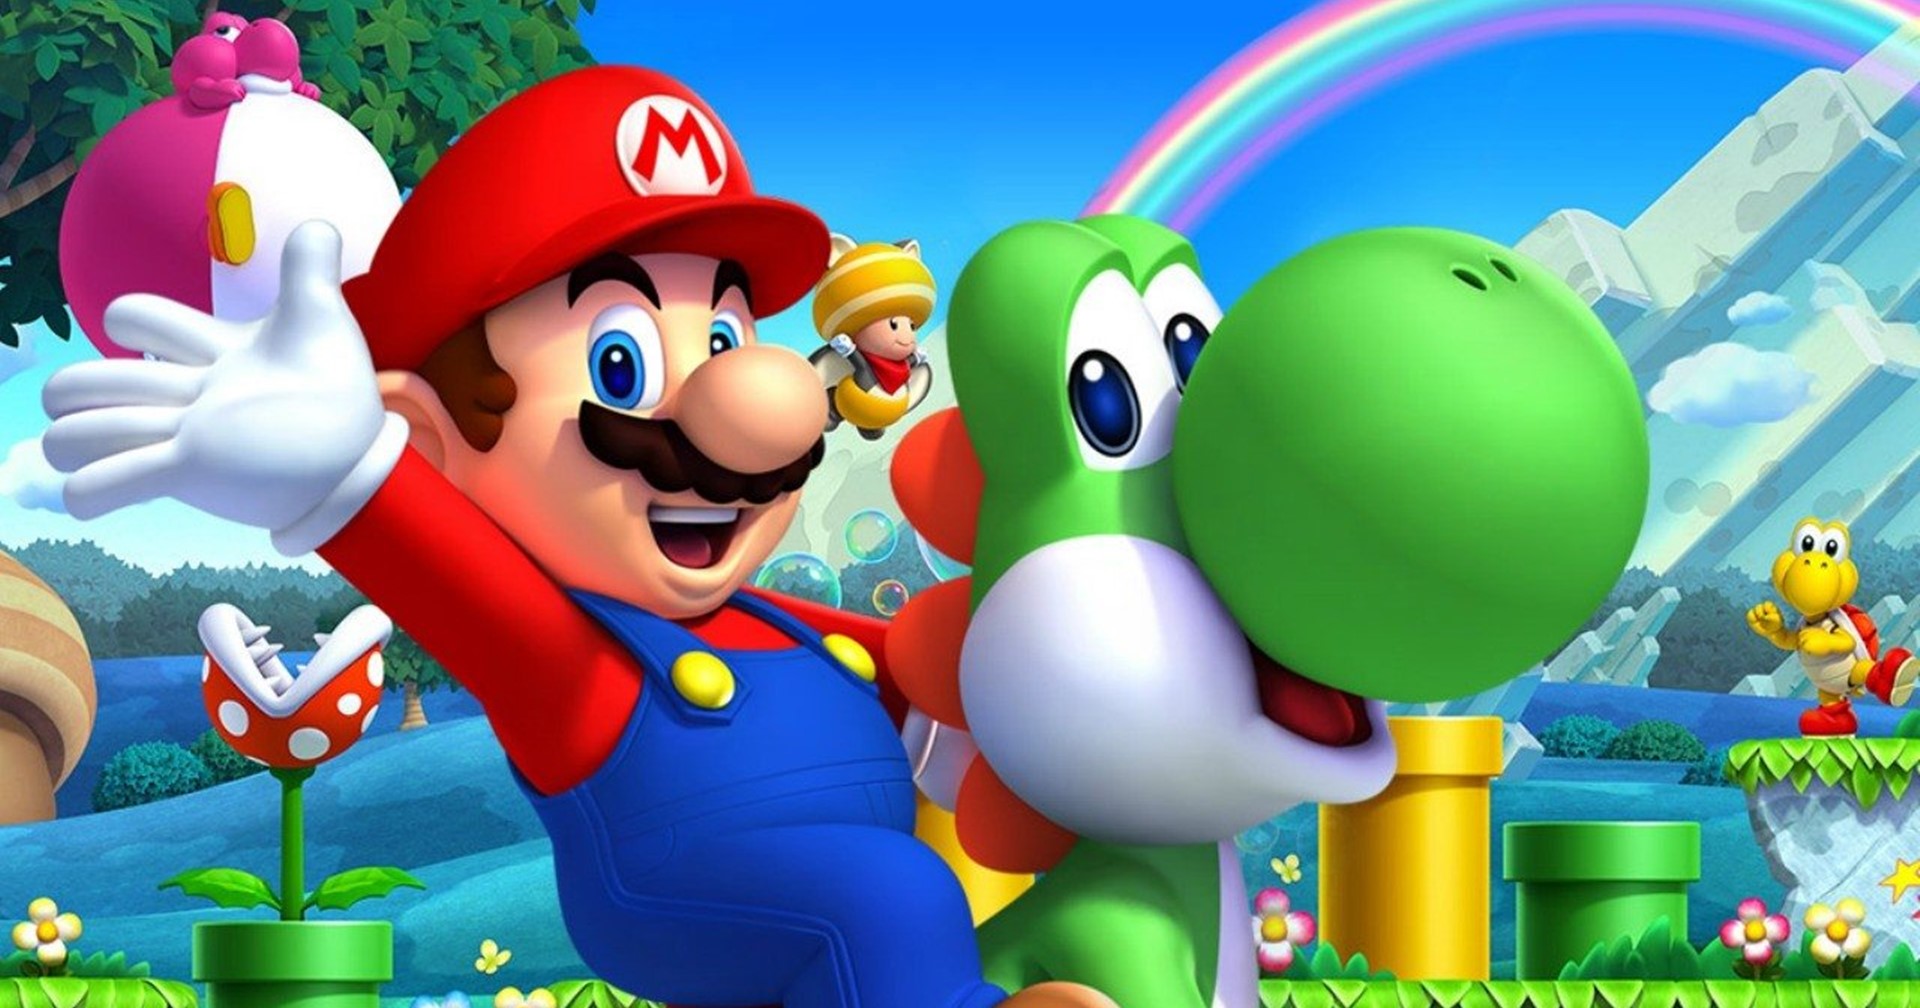 ข่าวลือ Mario ภาค 2 มิติอยู่ในระหว่างสร้าง และจะเปลี่ยนงานออกแบบใหม่หมด